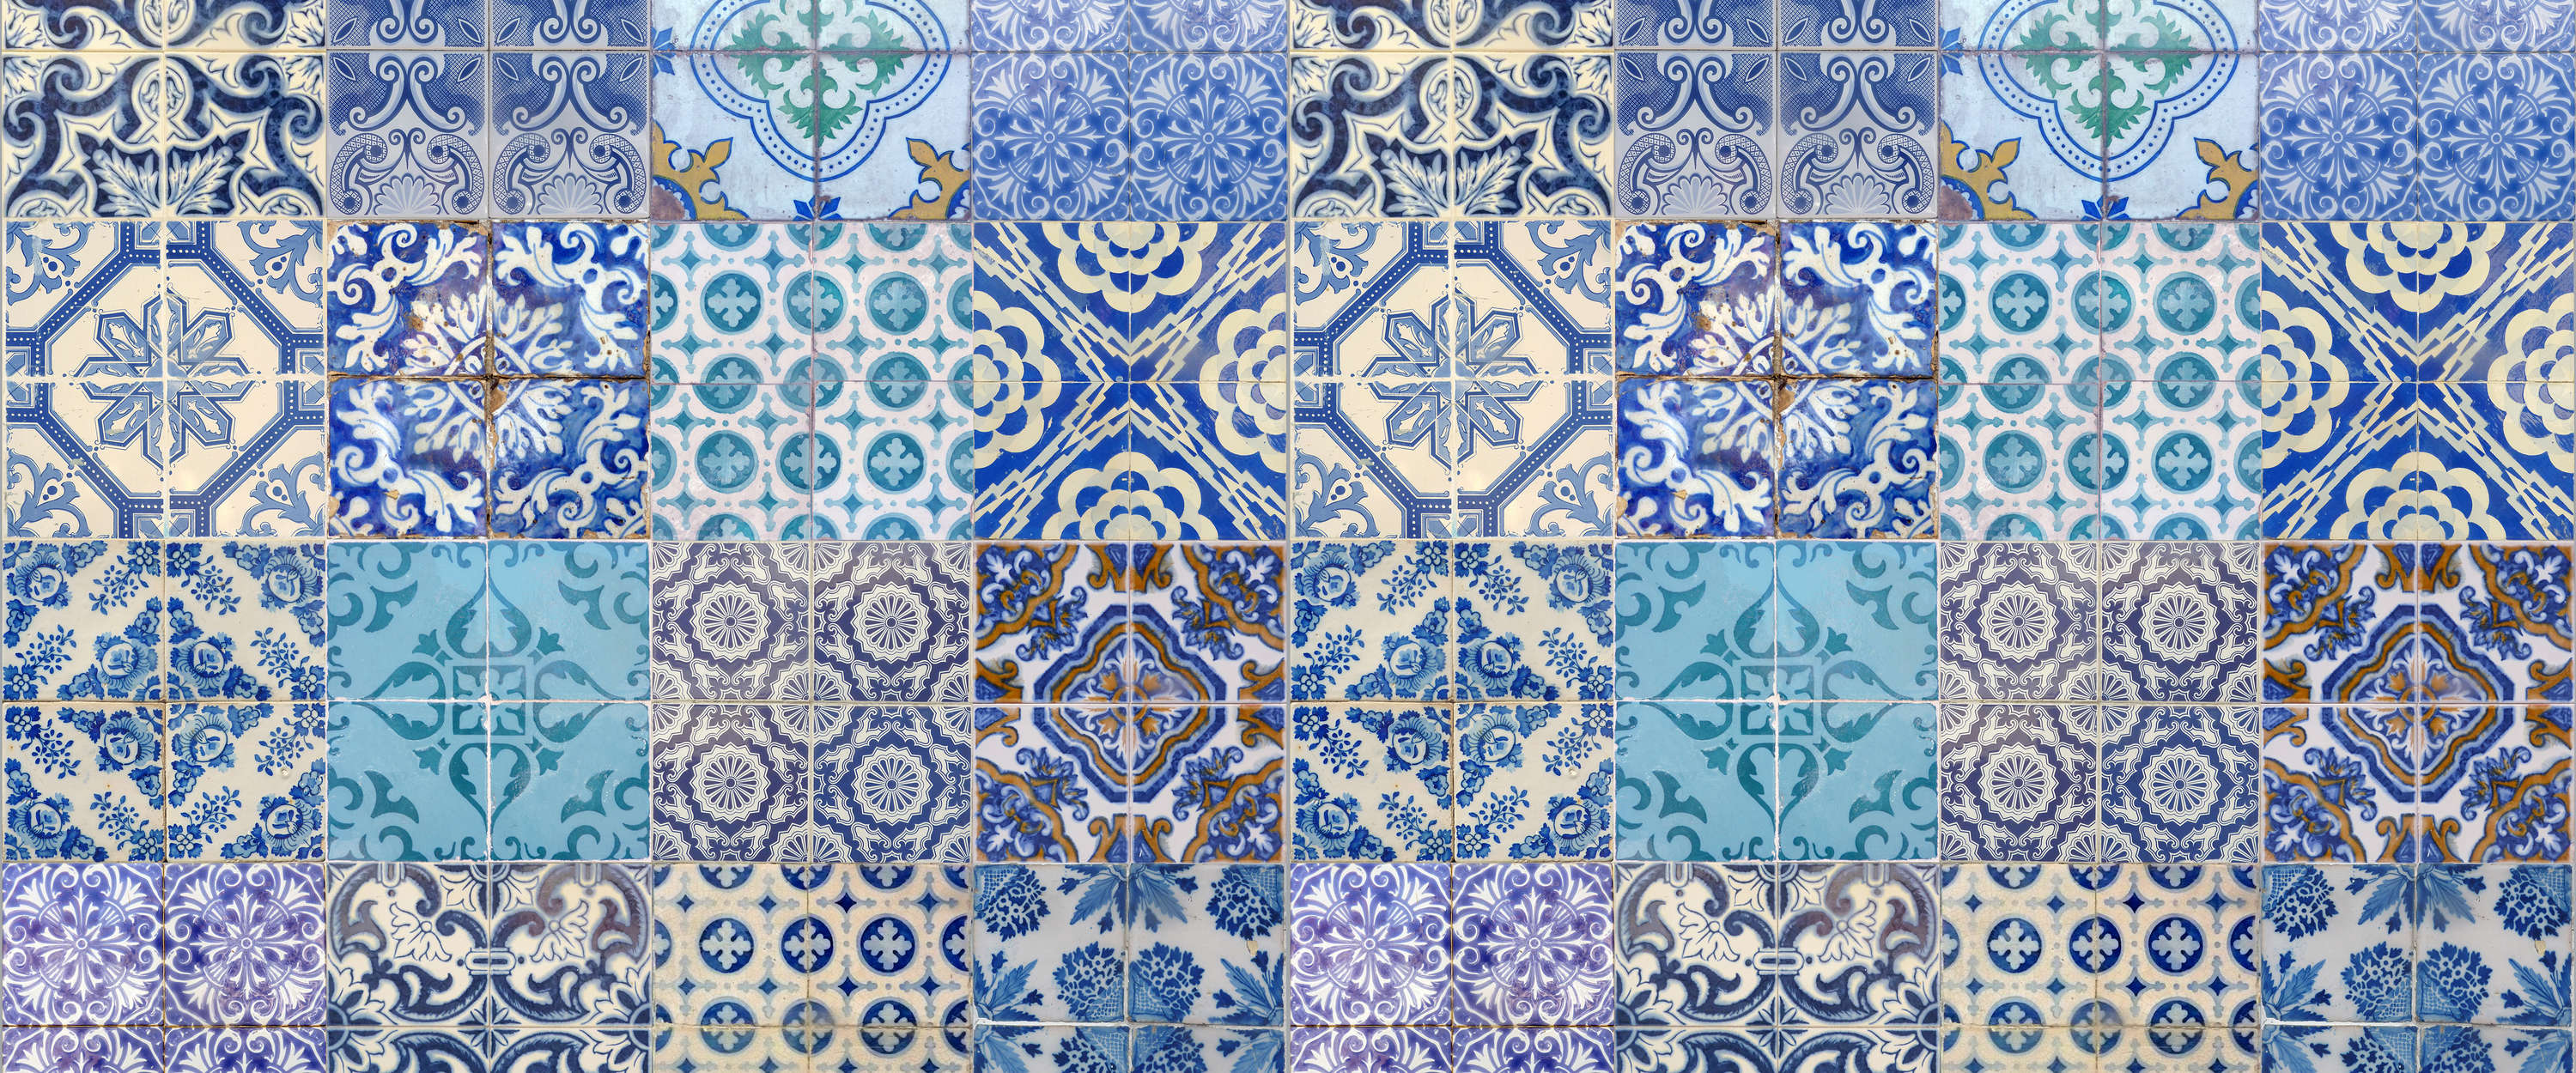             Fototapete Fliesenoptik Blau Weiß Vintage Mosaik Muster
        